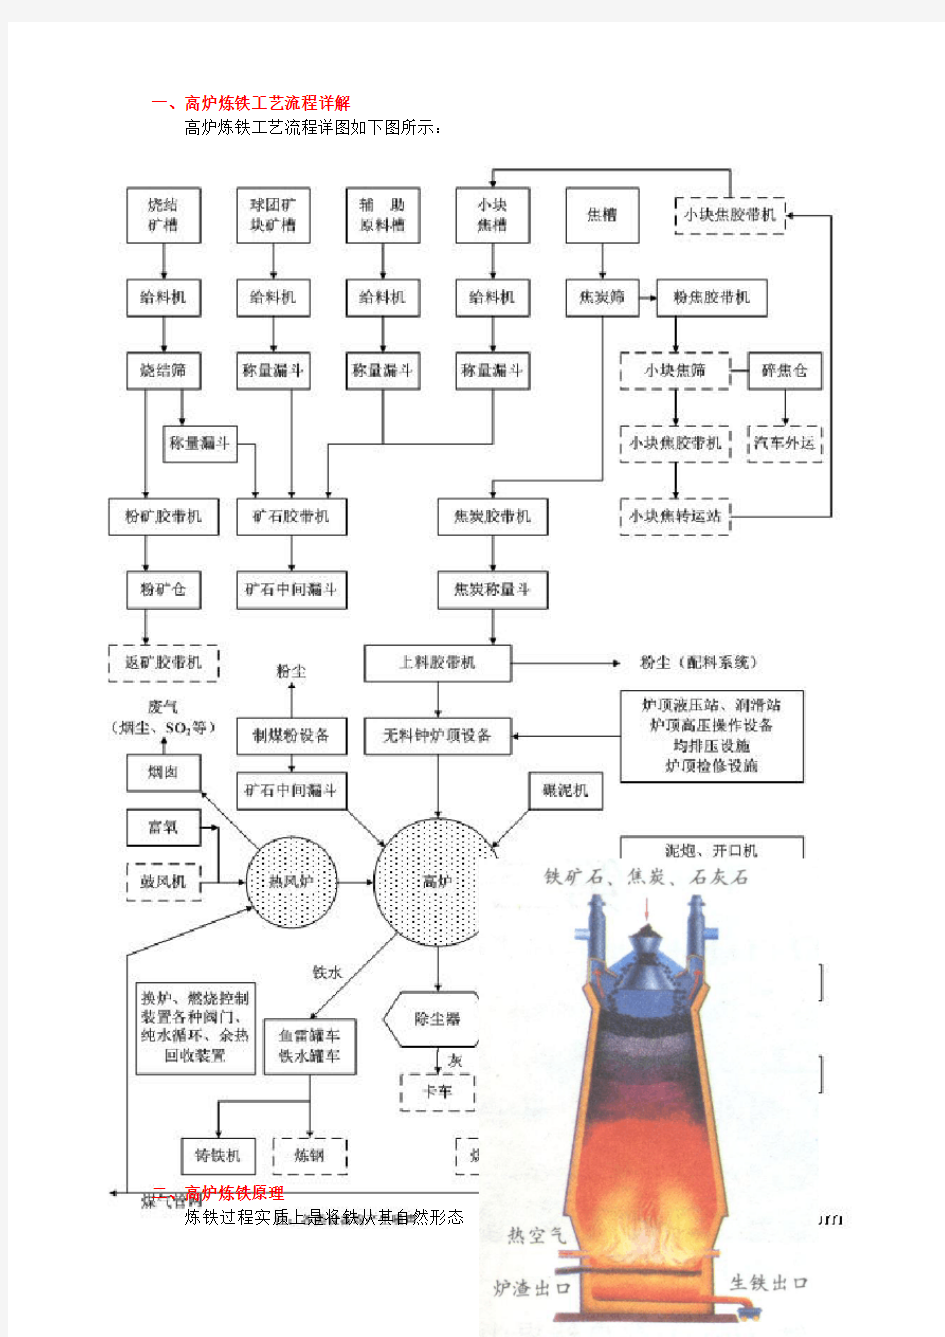 高炉炼铁工艺流程(经典)